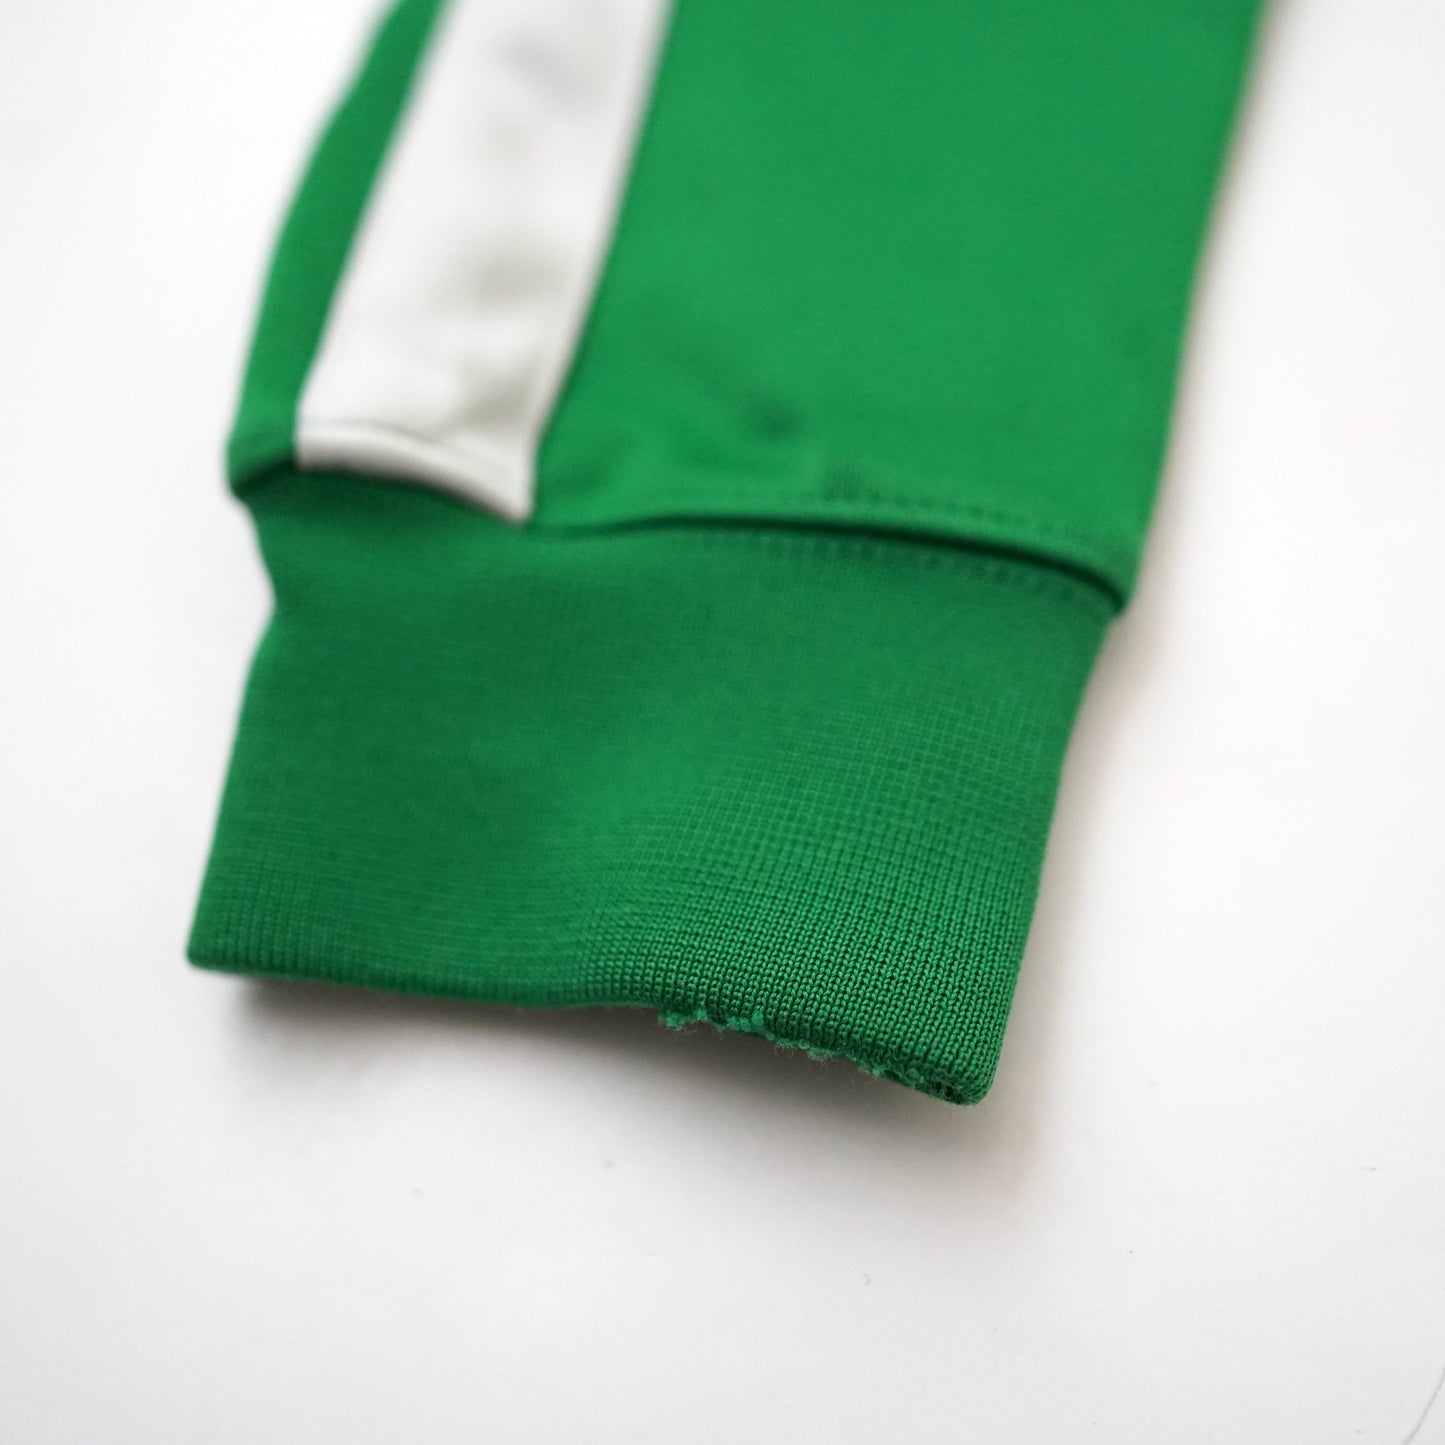 NIKE SV Werder Bremen jersey